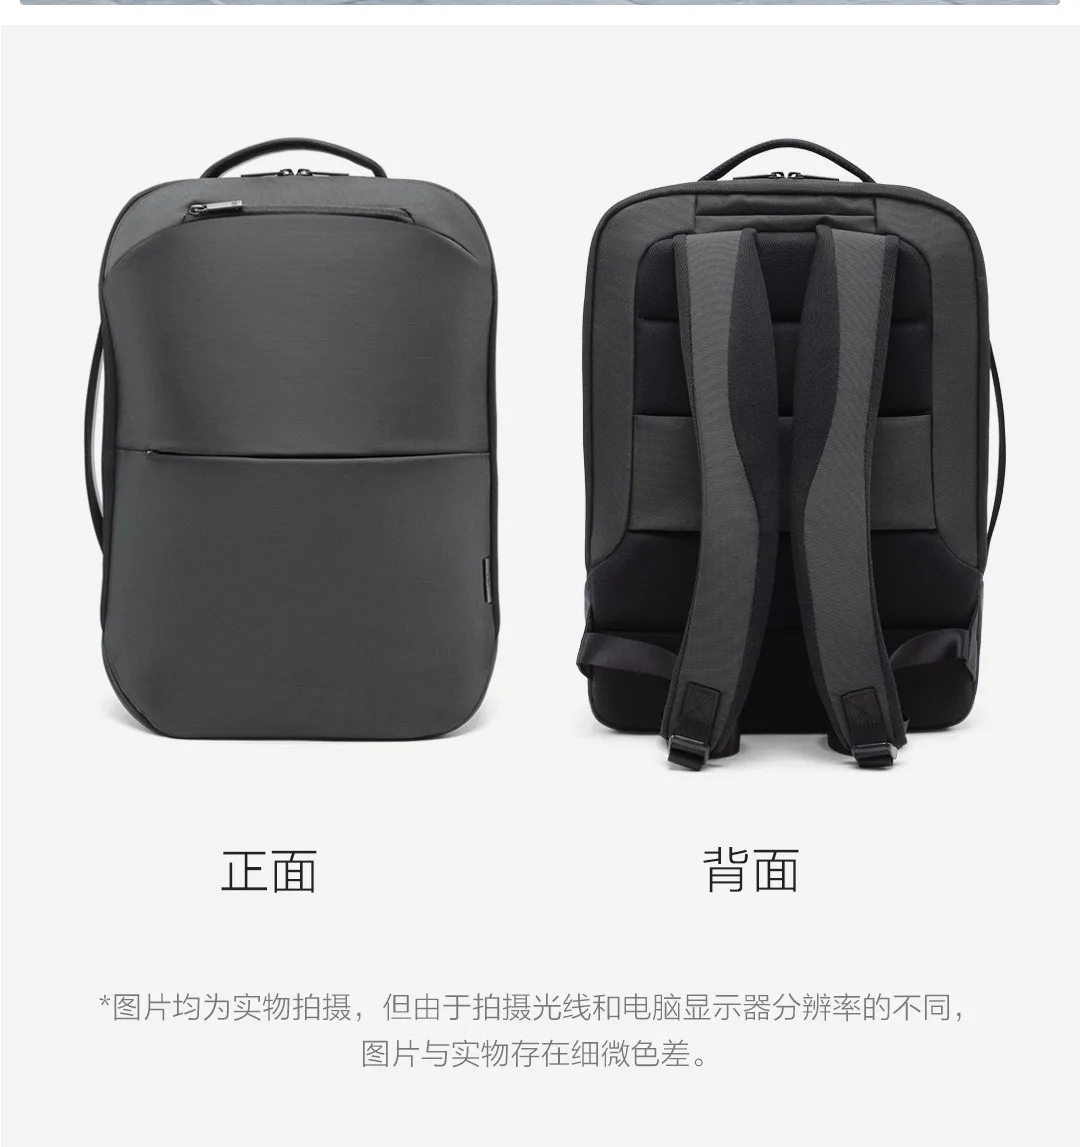 Xiaomi Youpin 90fun сумка MULTITASKER многофункциональная деловая дорожная посылка 20л черная большая емкость для работы